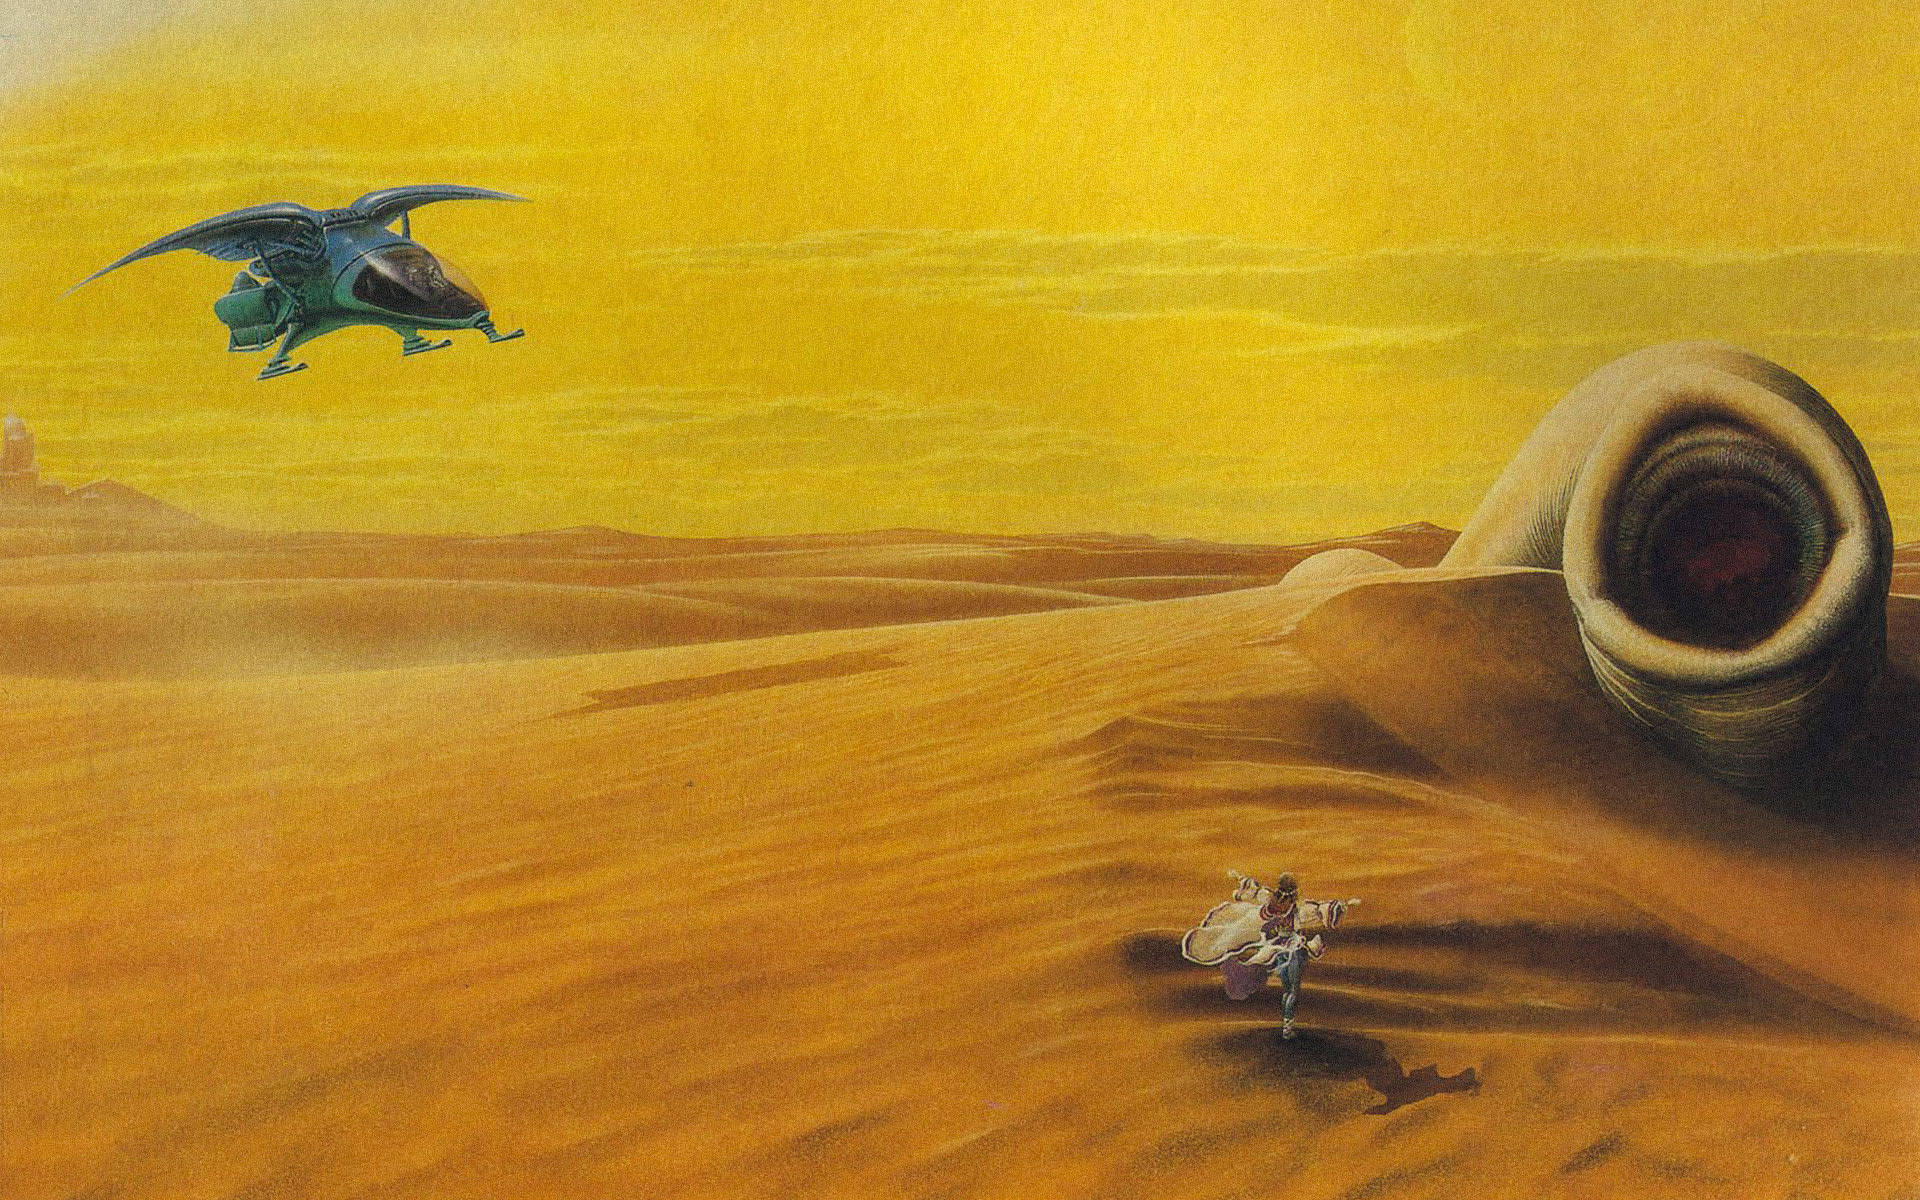 Dune Running Man Background